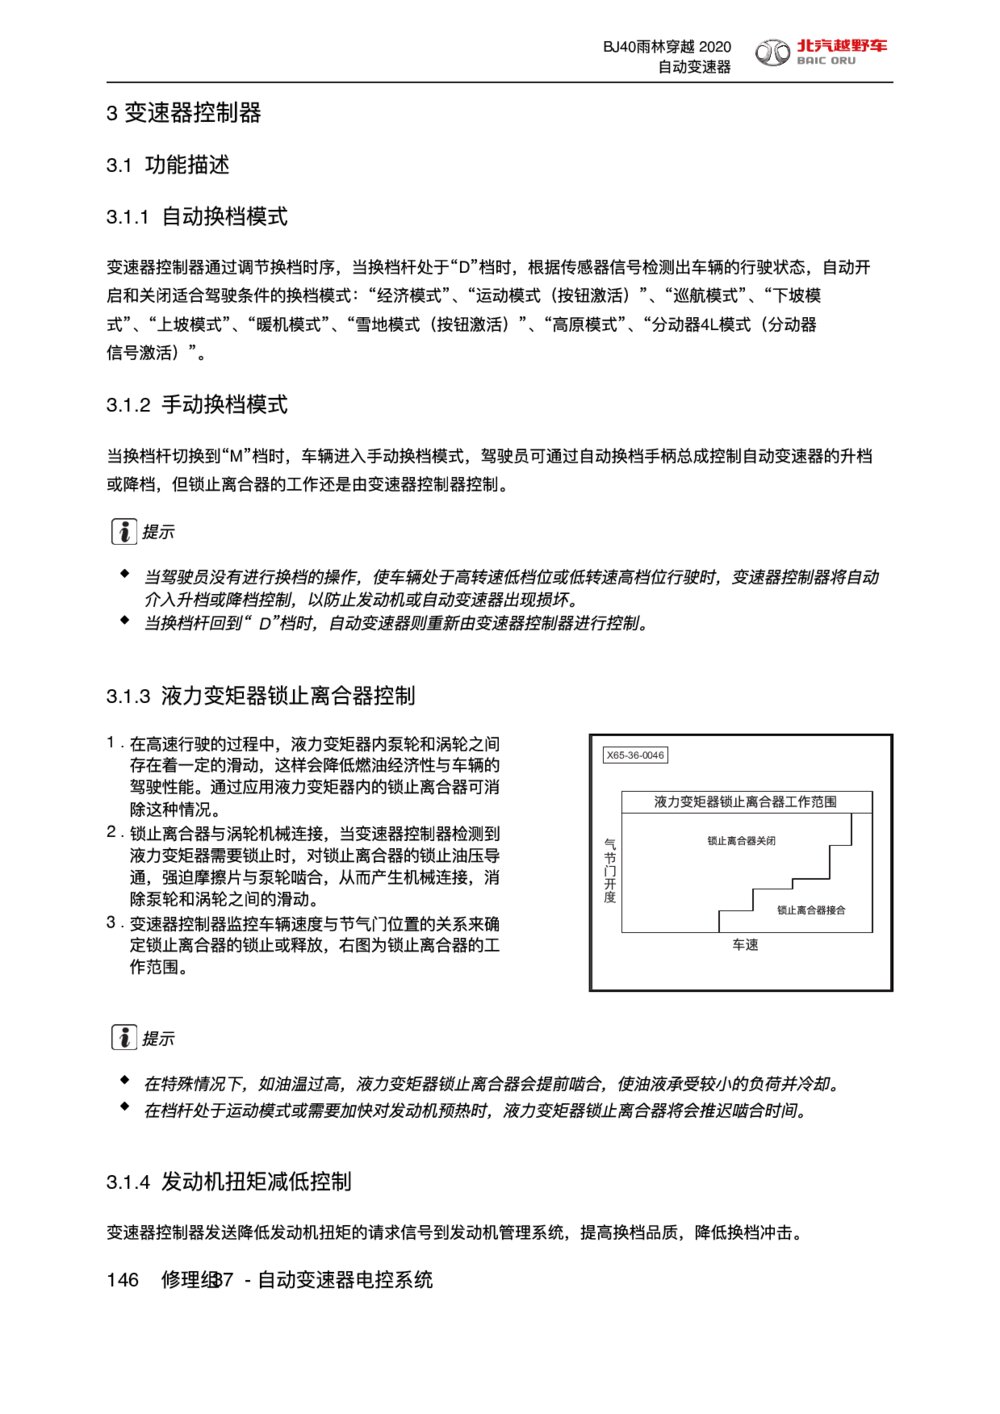 2020款北京BJ40雨林穿越版变速器控制器手册